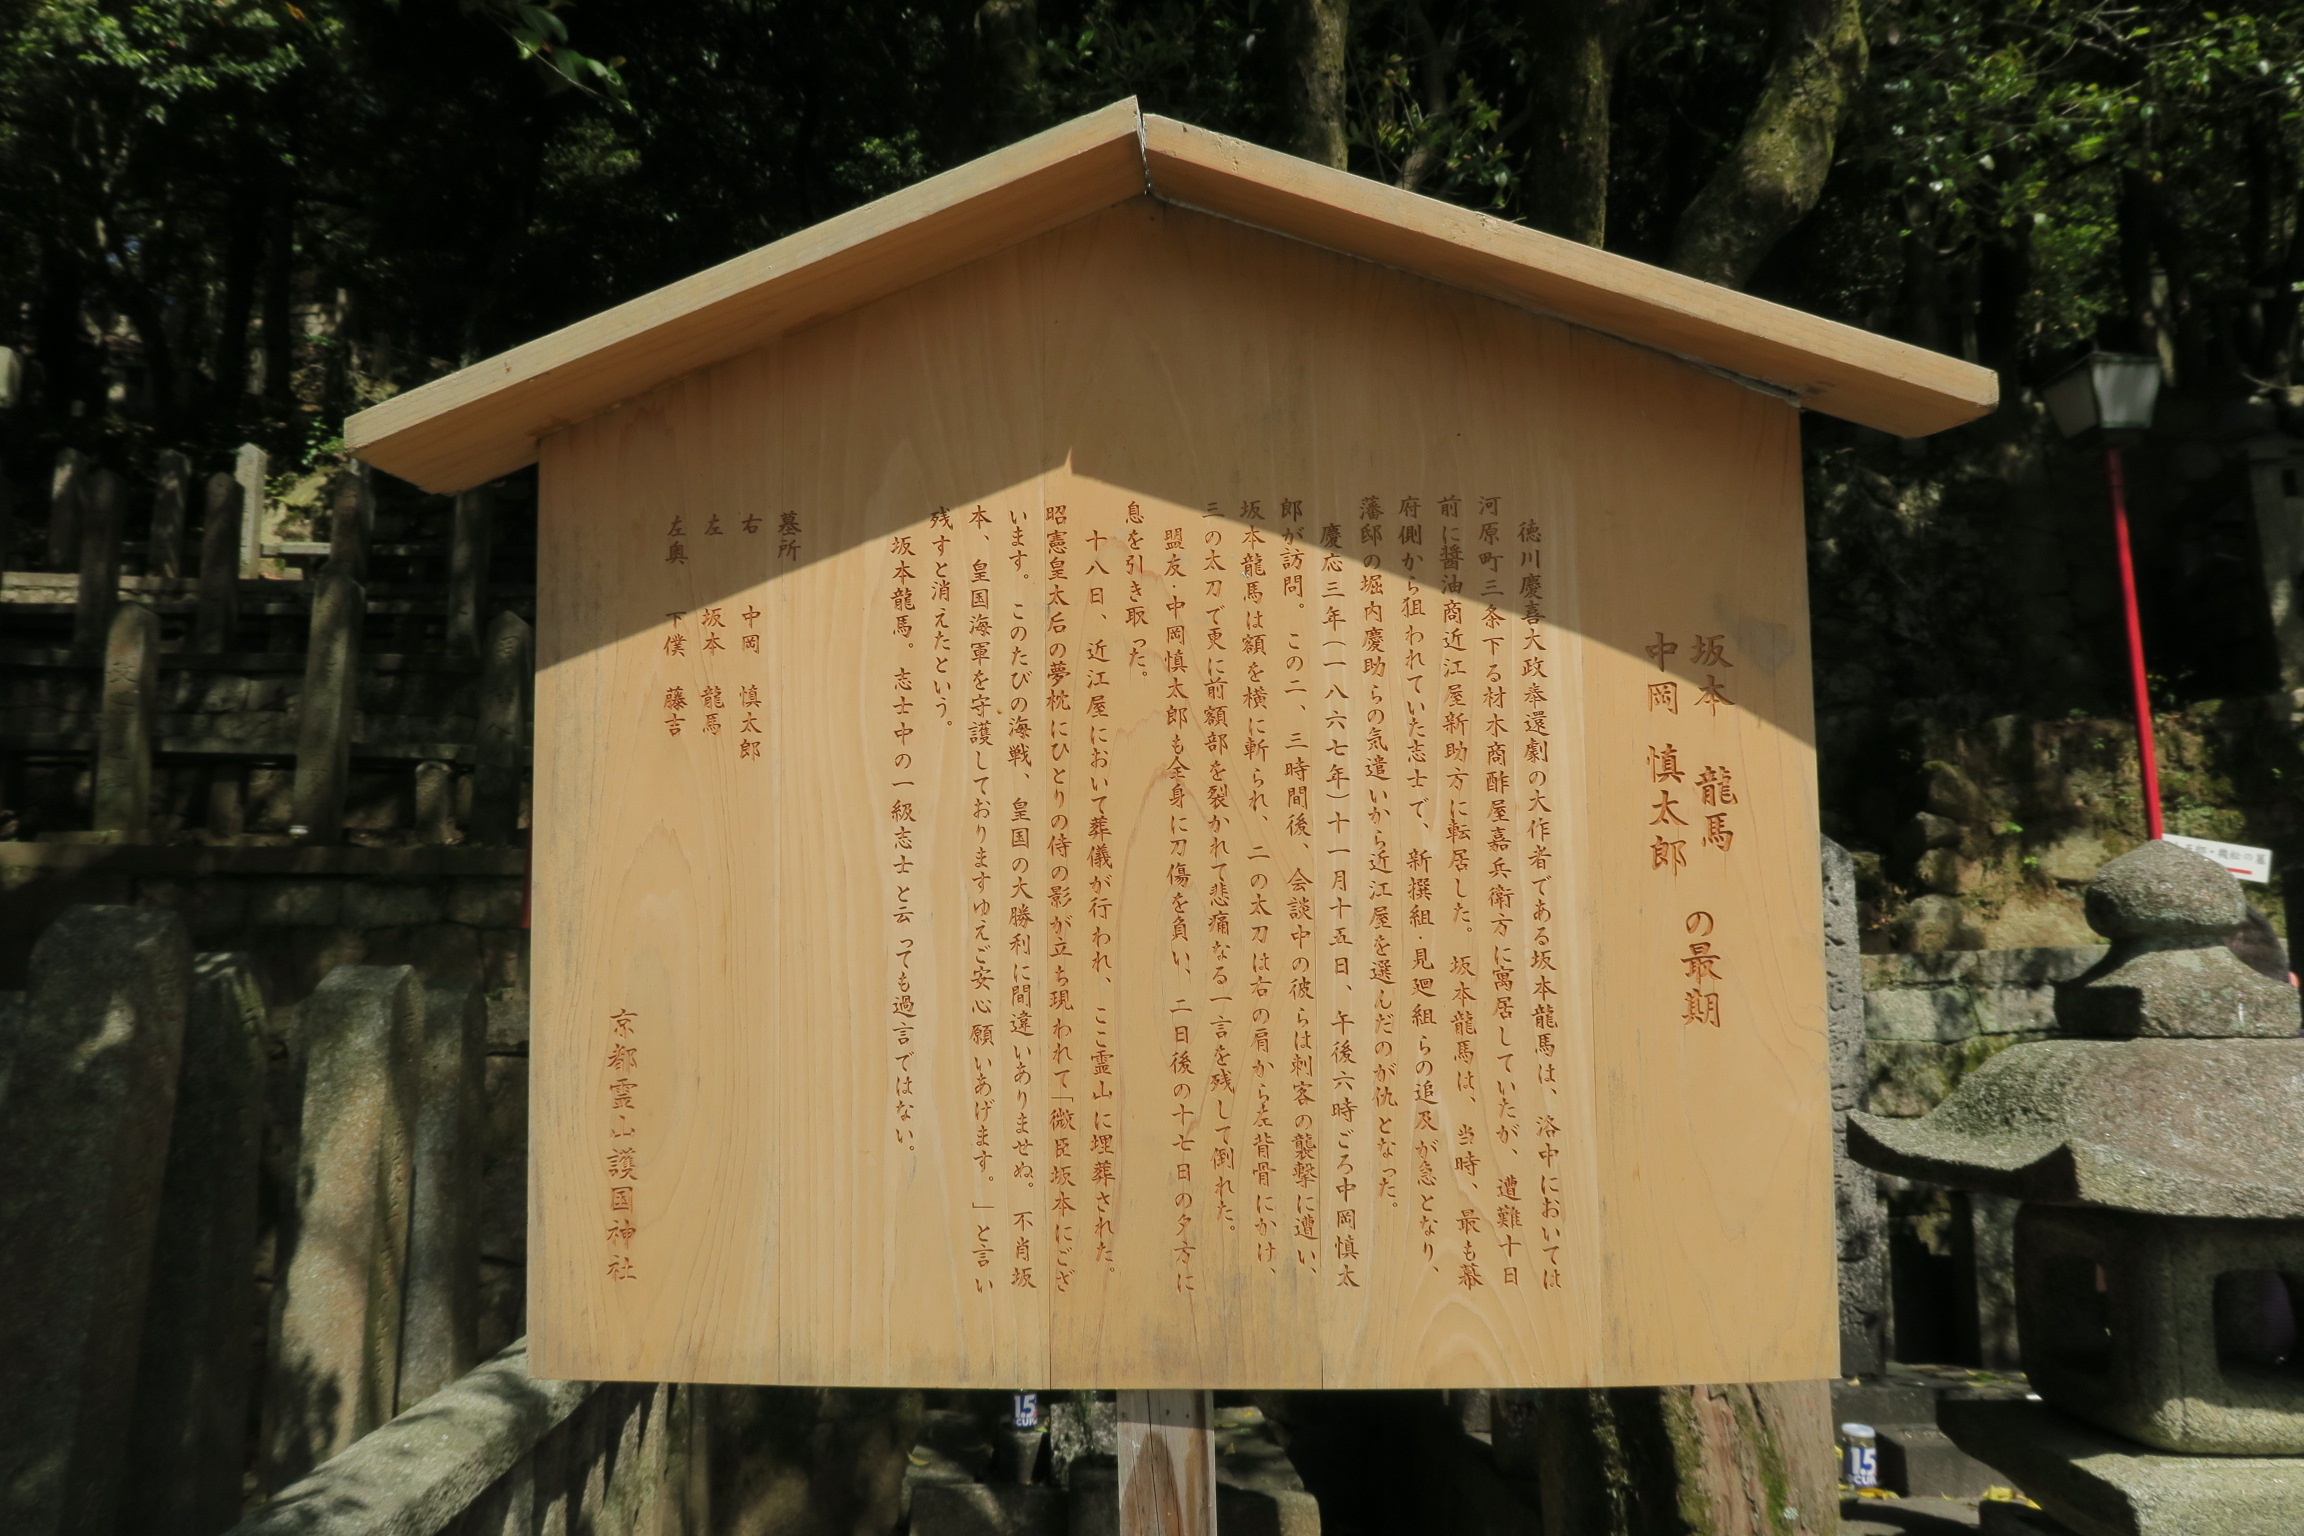 大政奉還劇の大作者「坂本龍馬」。木製の案内版文字は一つ1つ彫り込まれていました。